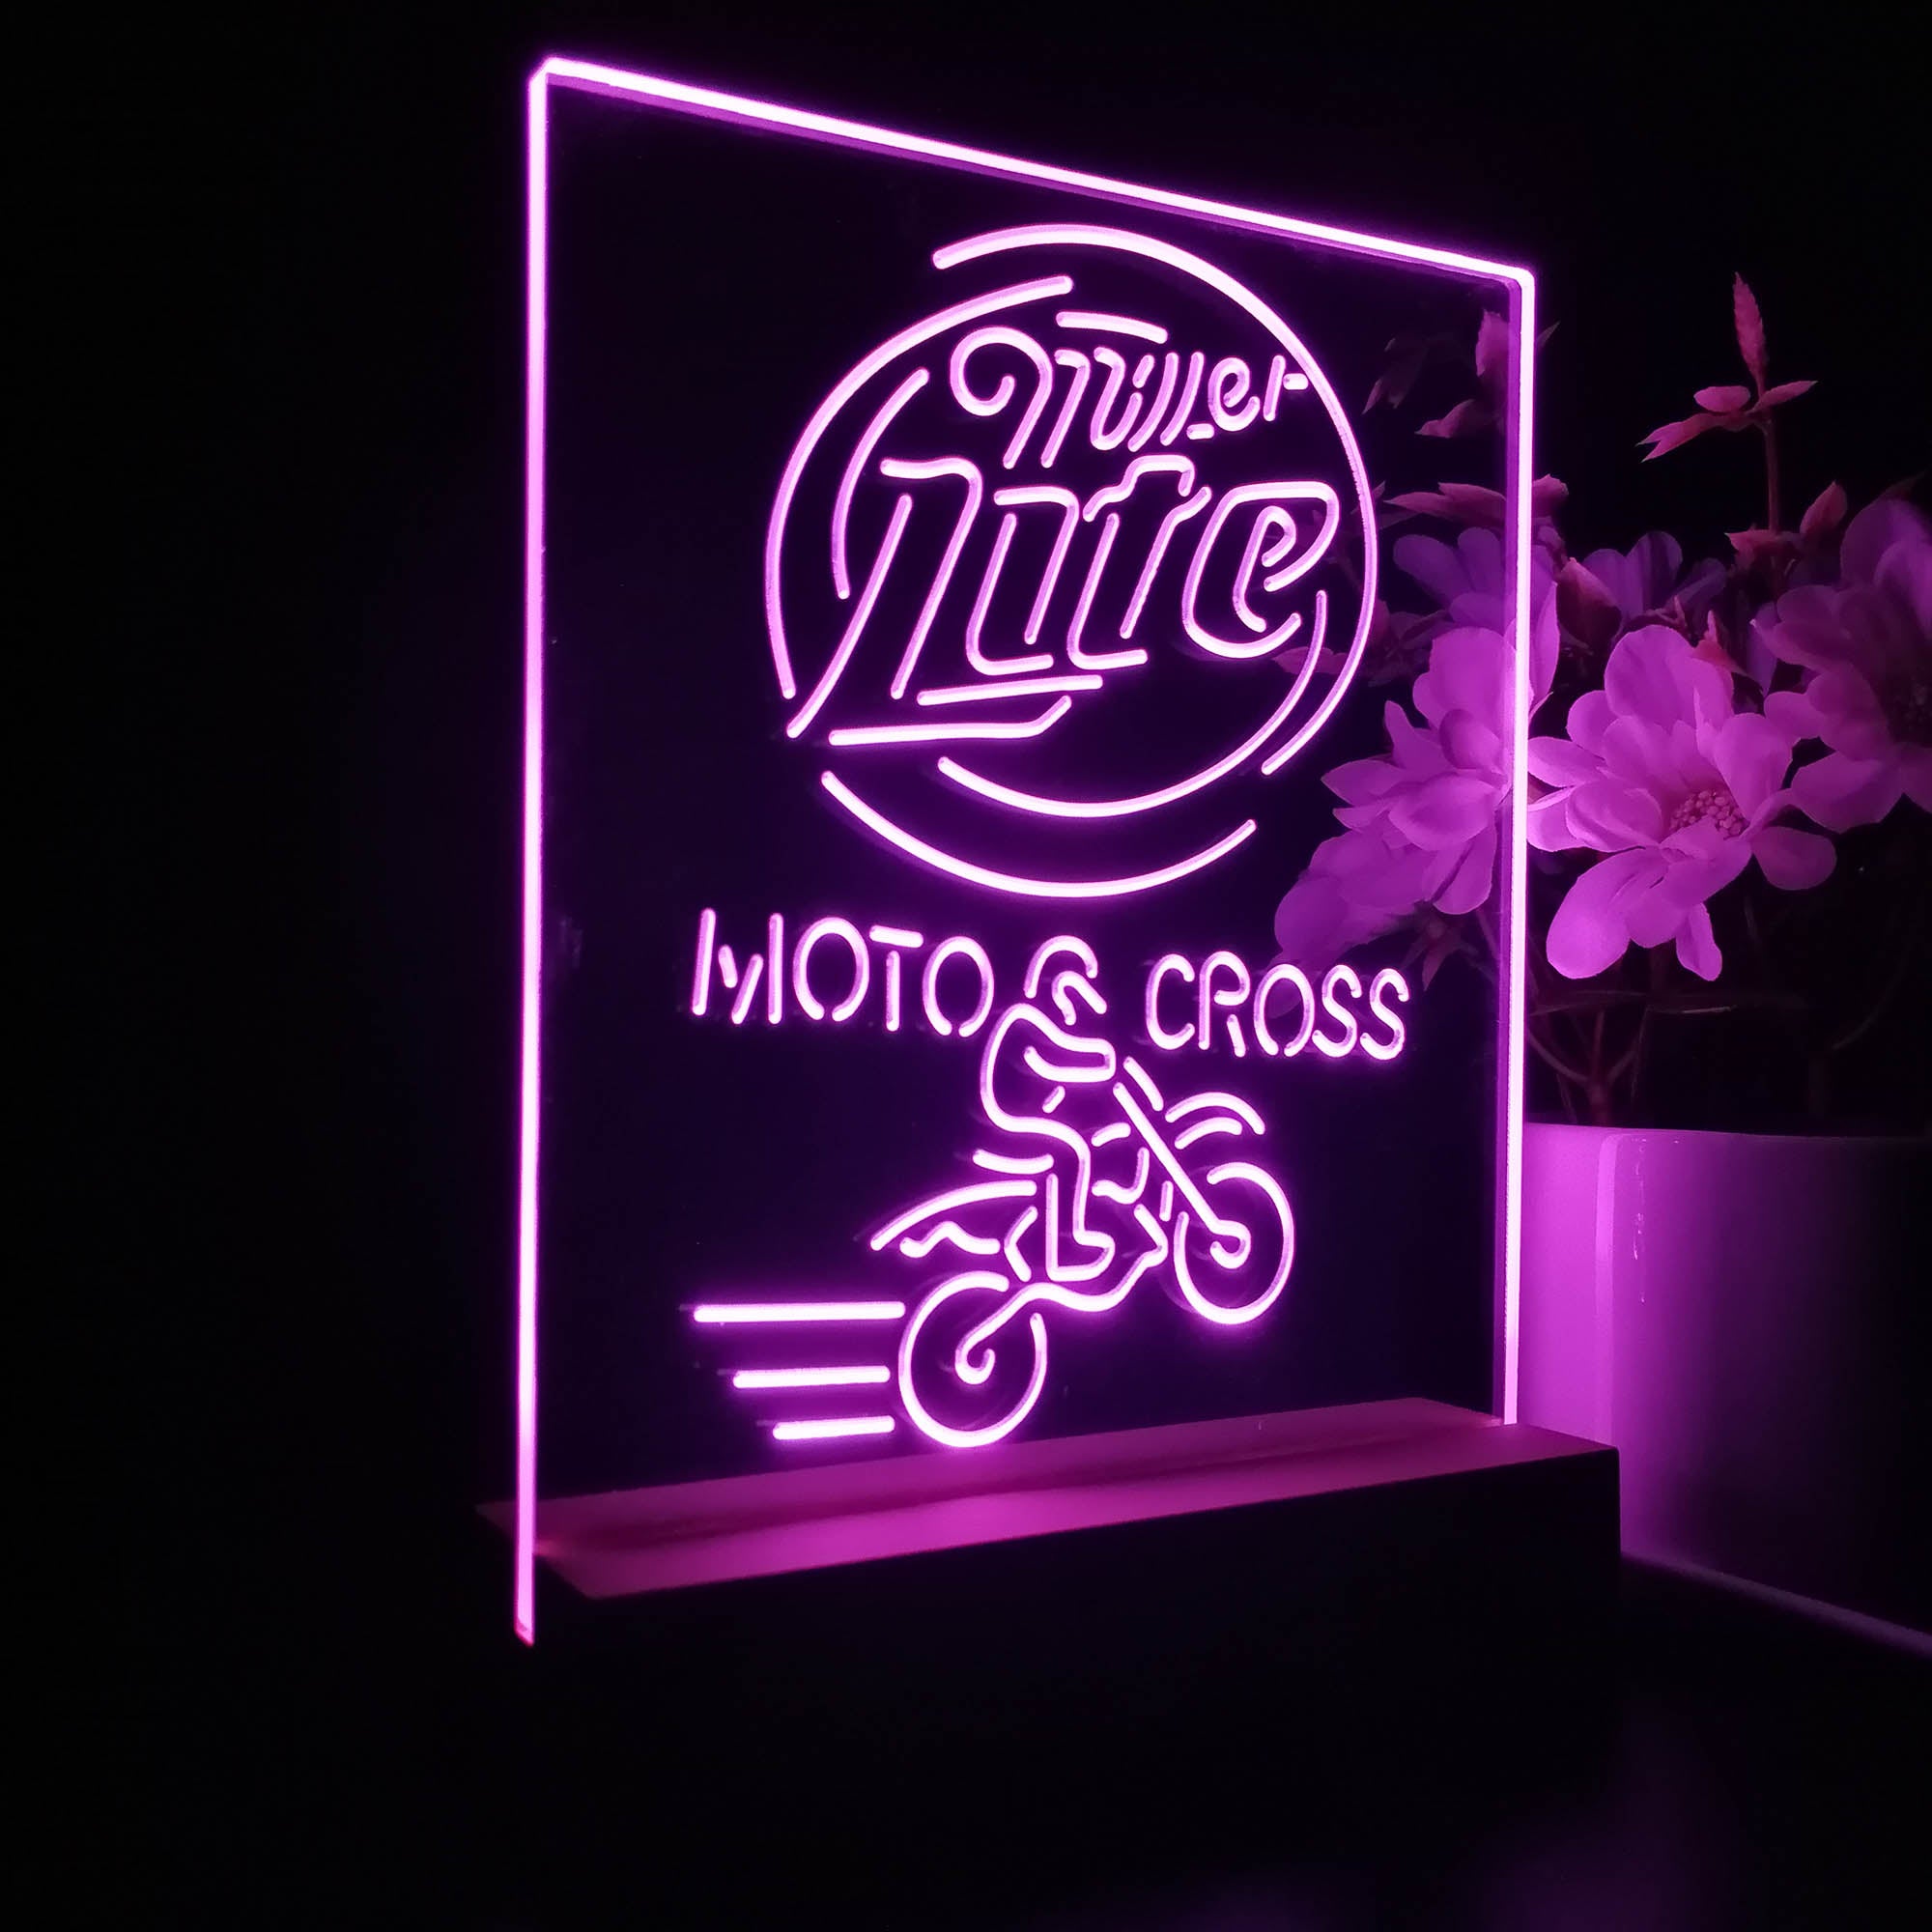 Miller Lite Moto Cross Motor 3D LED Optical Illusion Night Light Table Lamp